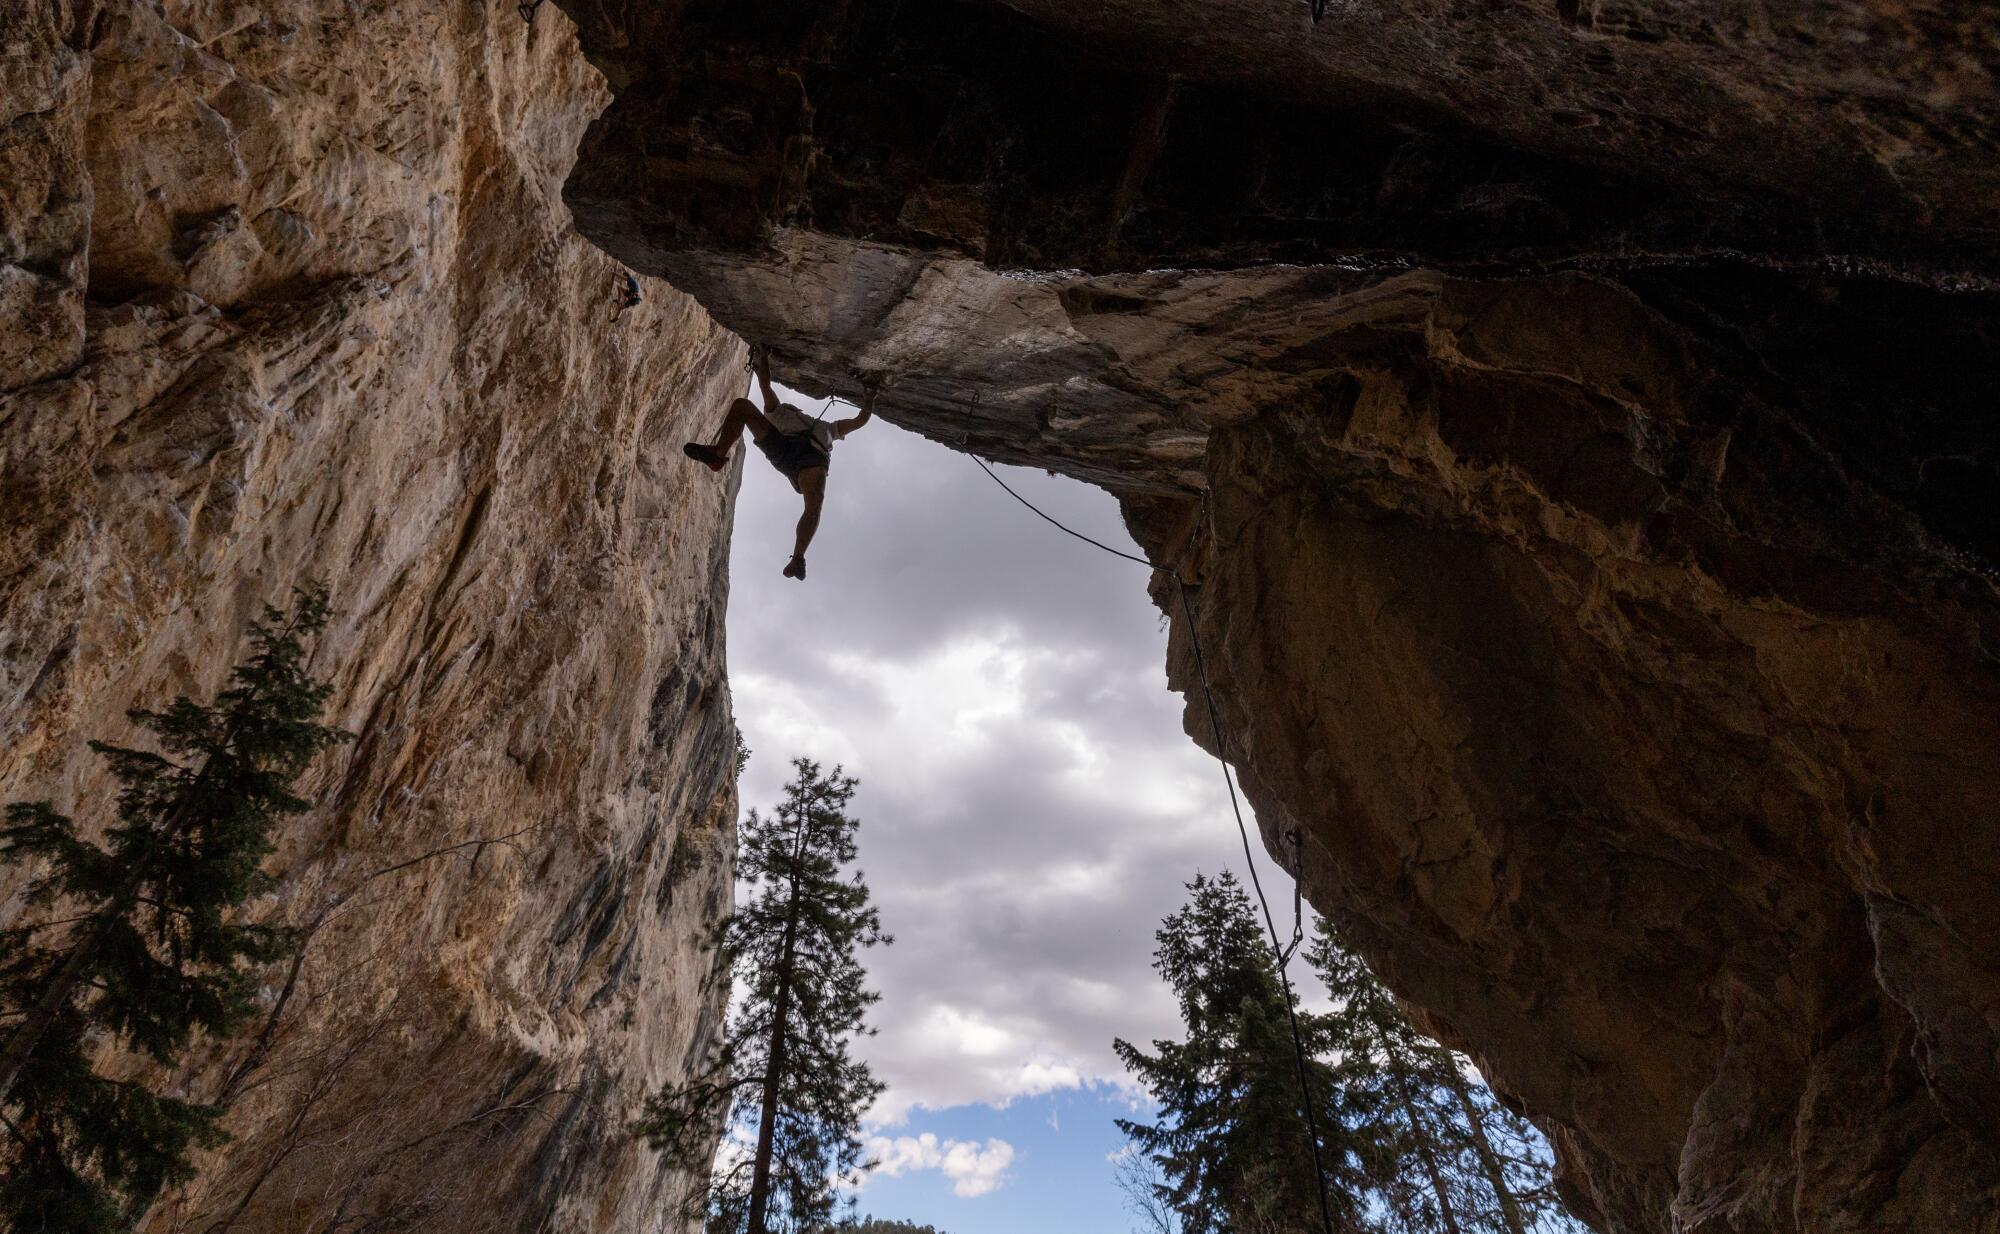   Un escalador cuelga a gran altura del suelo desde una plataforma horizontal de roca.  